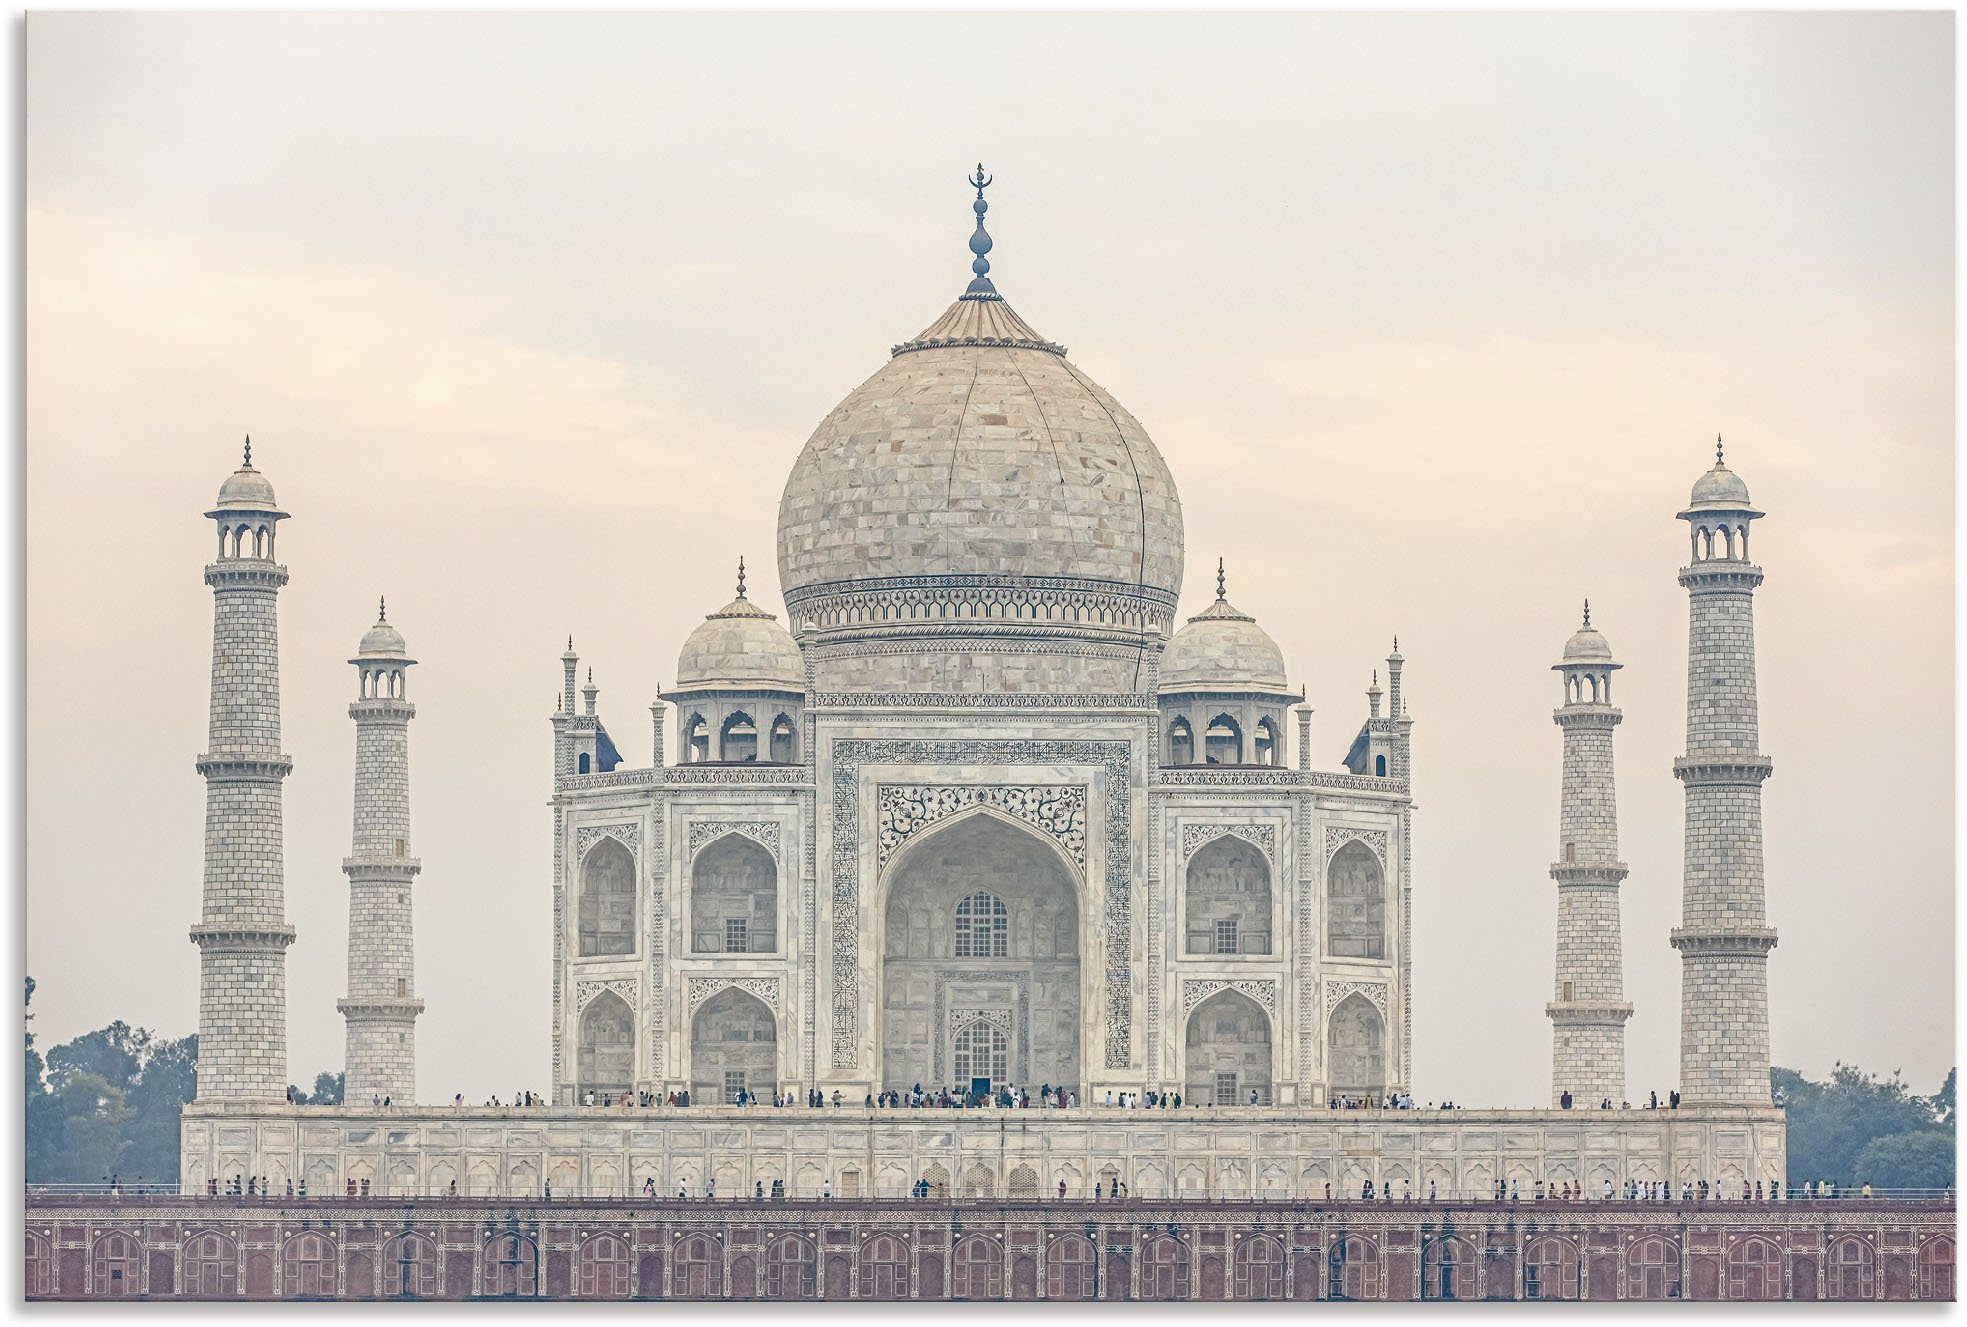 Artland Artprint Taj Mahal in vele afmetingen & productsoorten - artprint van aluminium / artprint voor buiten, artprint op linnen, poster, muursticker / wandfolie ook geschikt voo